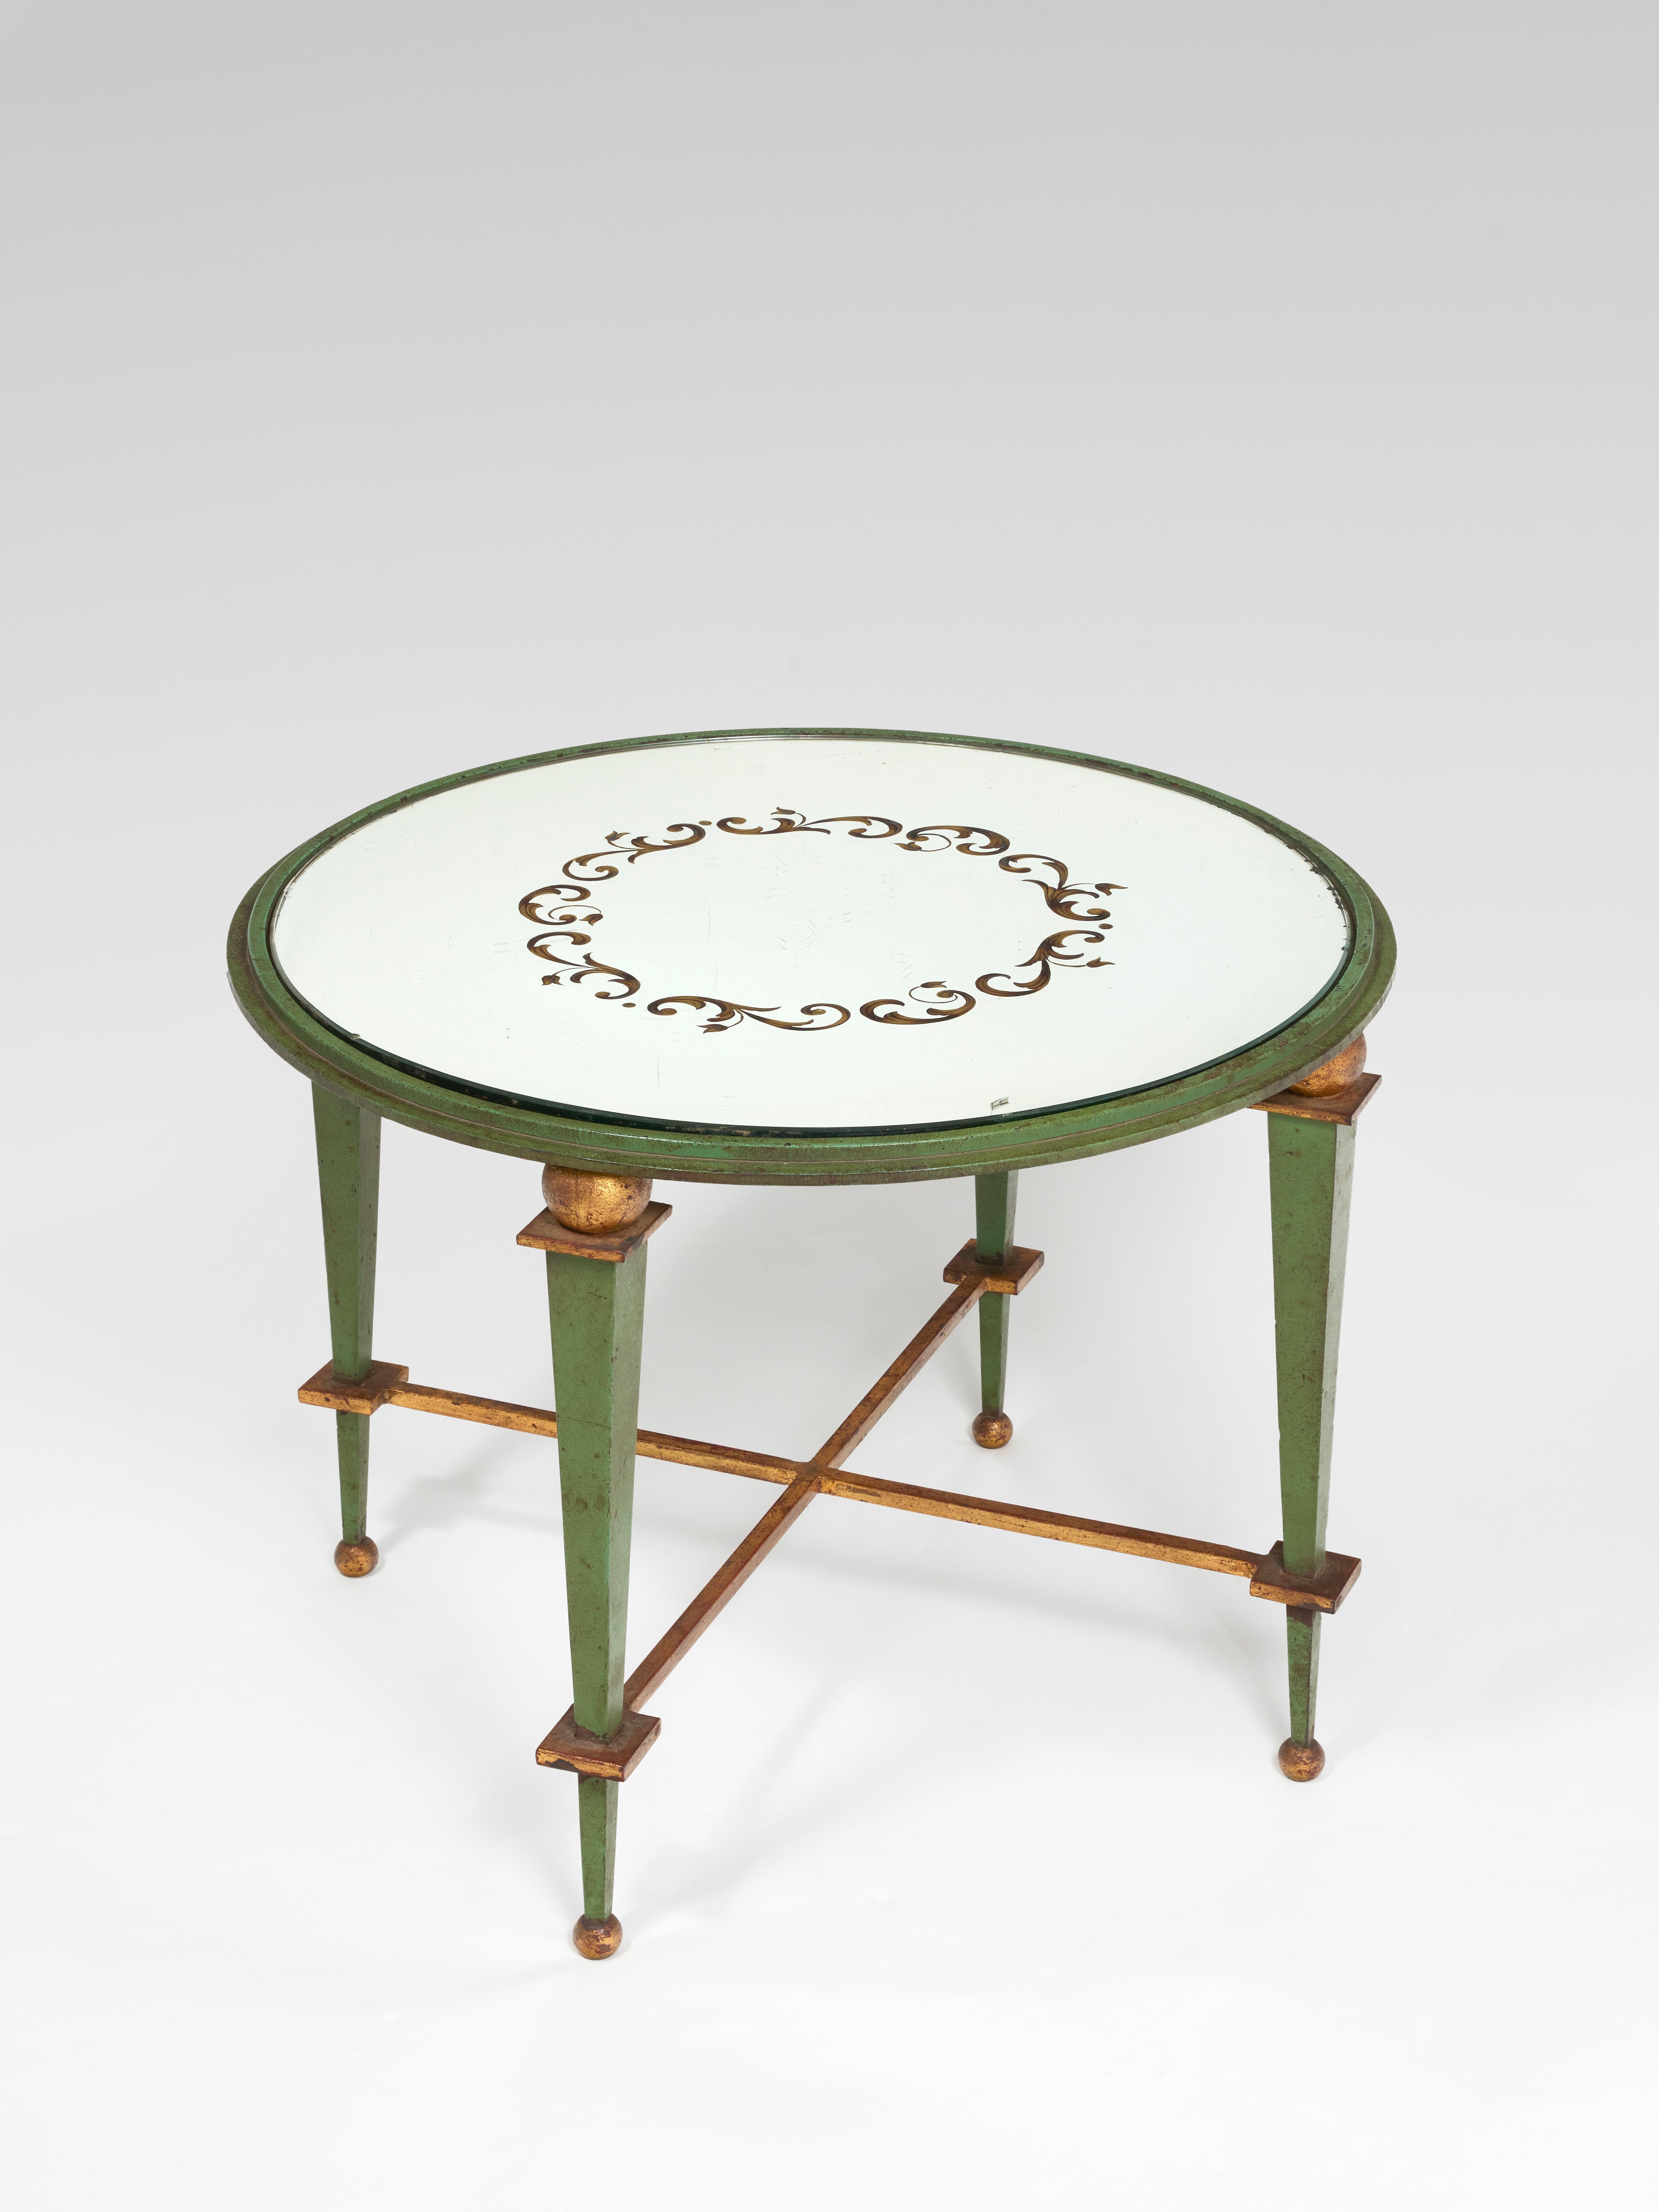 Couchtisch mit runder Platte aus Eglomeratglas mit Flechtwerkdekor.
Grüner und goldener Sockel aus Schmiedeeisen mit vier Beinen, die durch eine 